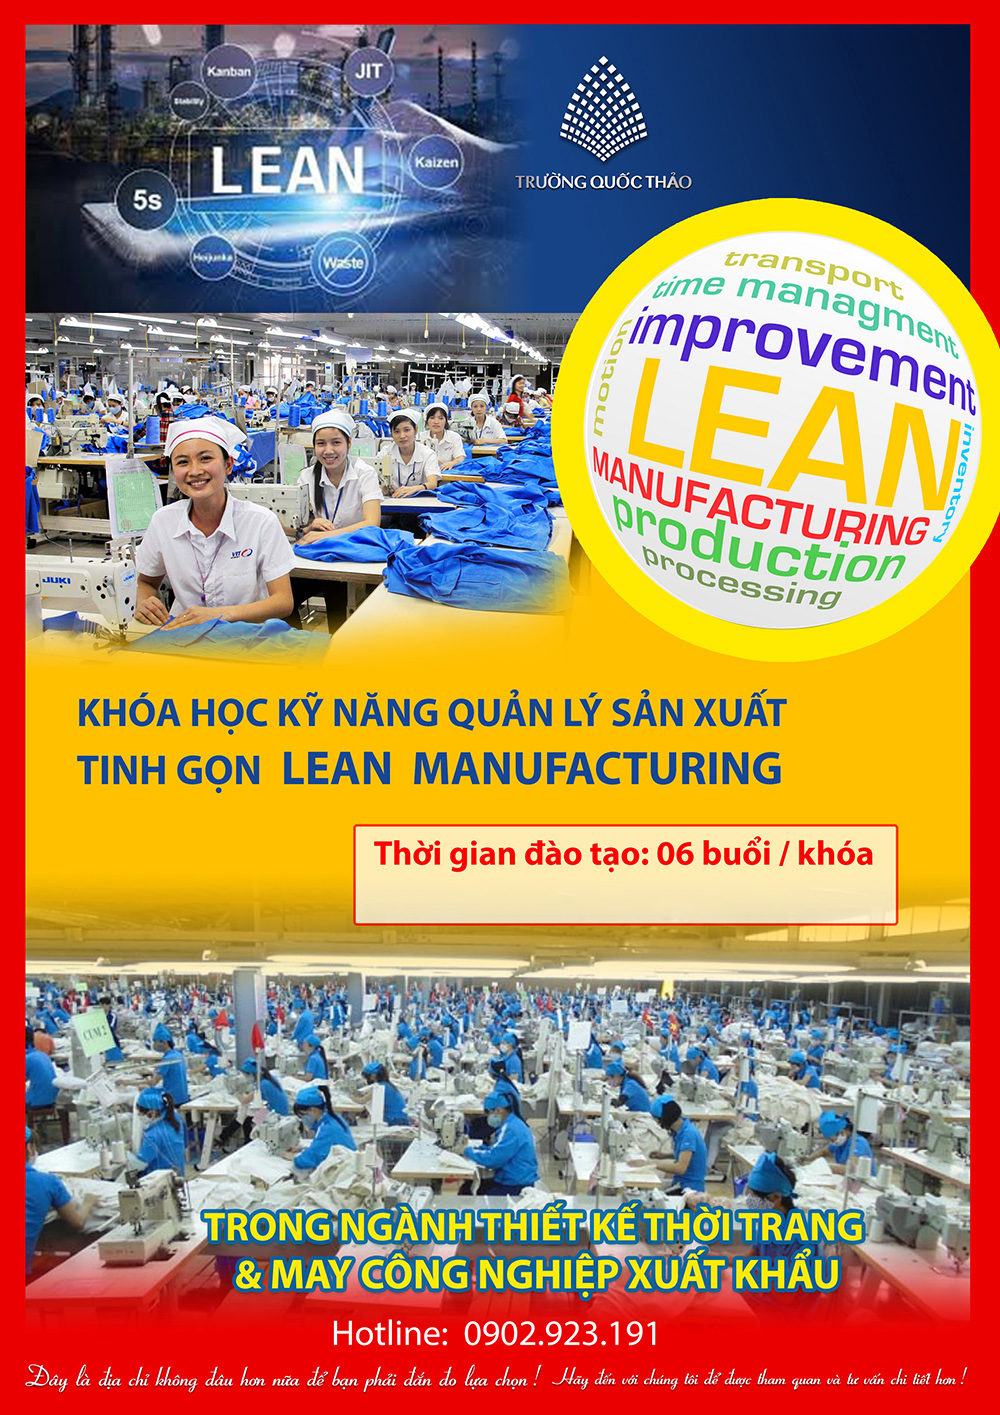 Quản lý sản xuất tinh gọn Lean Manufacturing - 5S - Kaizen chuyên ngành may